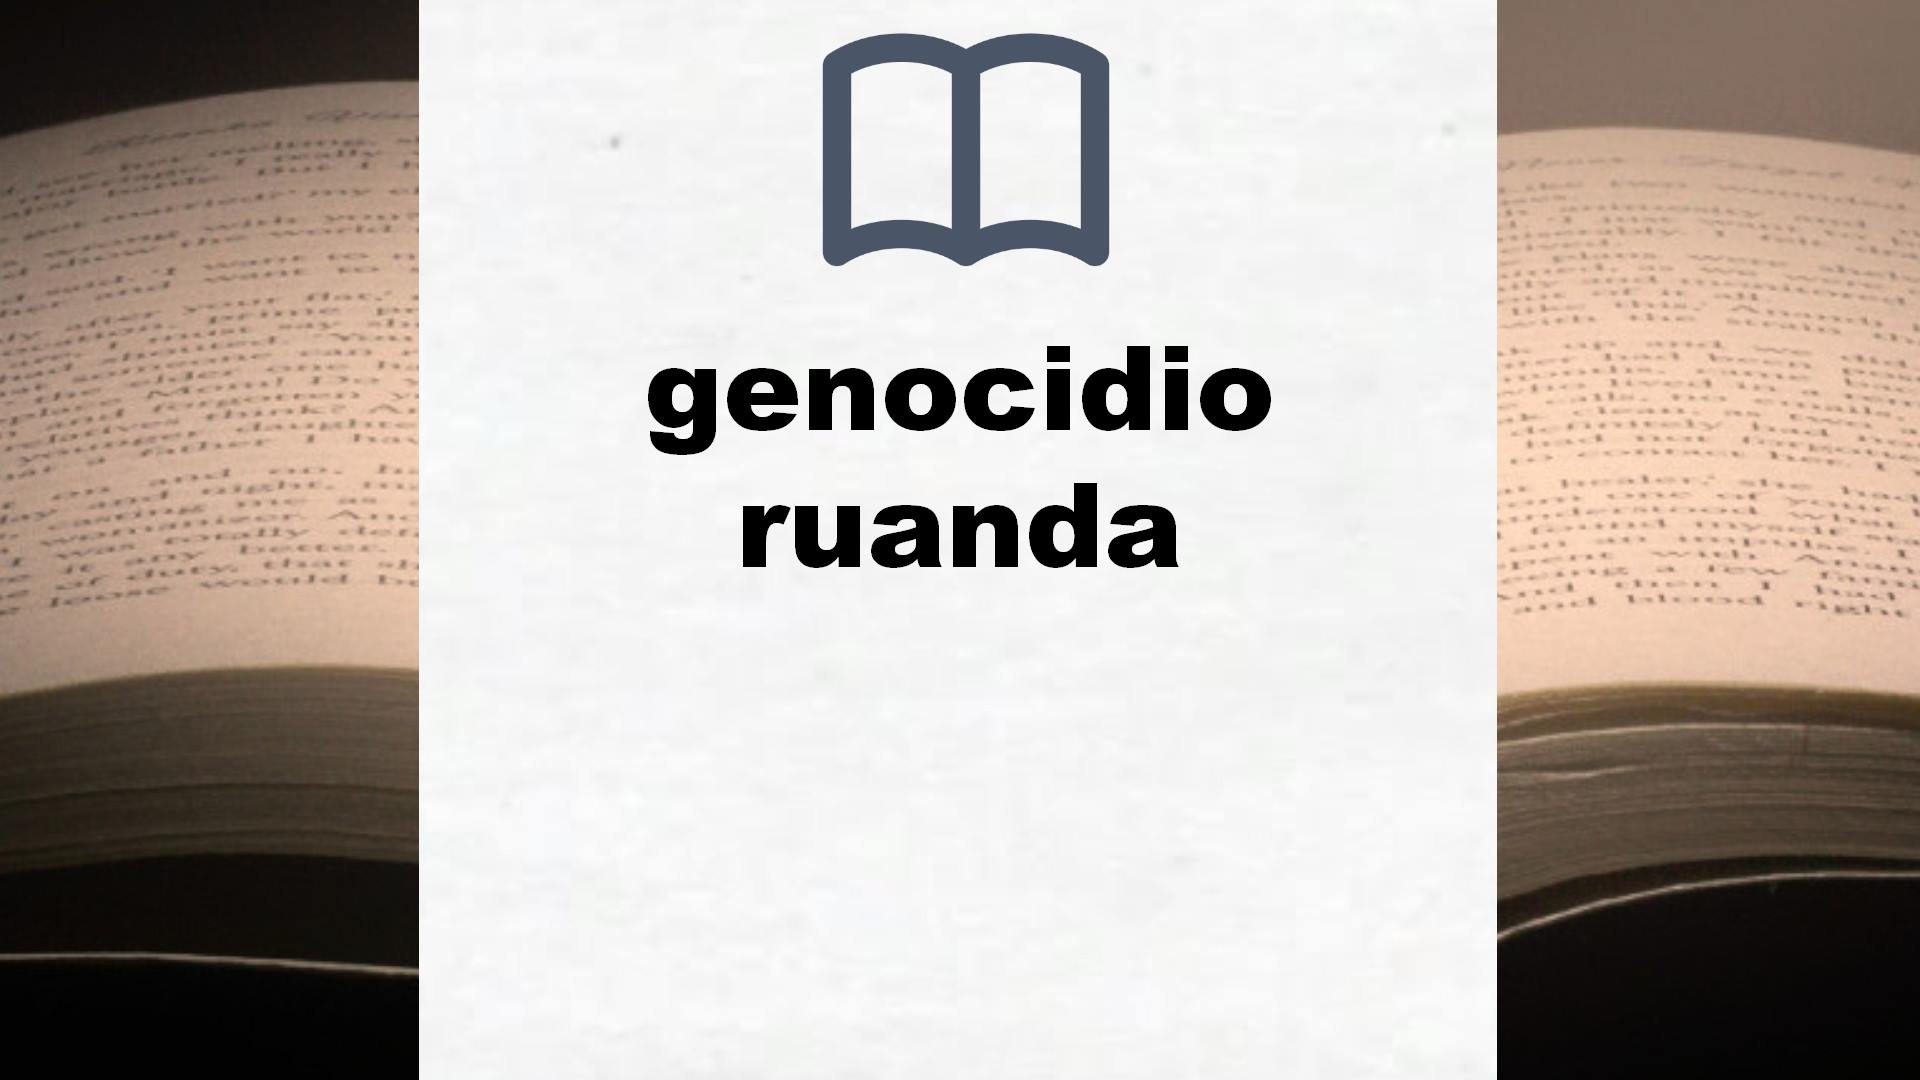 Libros sobre genocidio ruanda